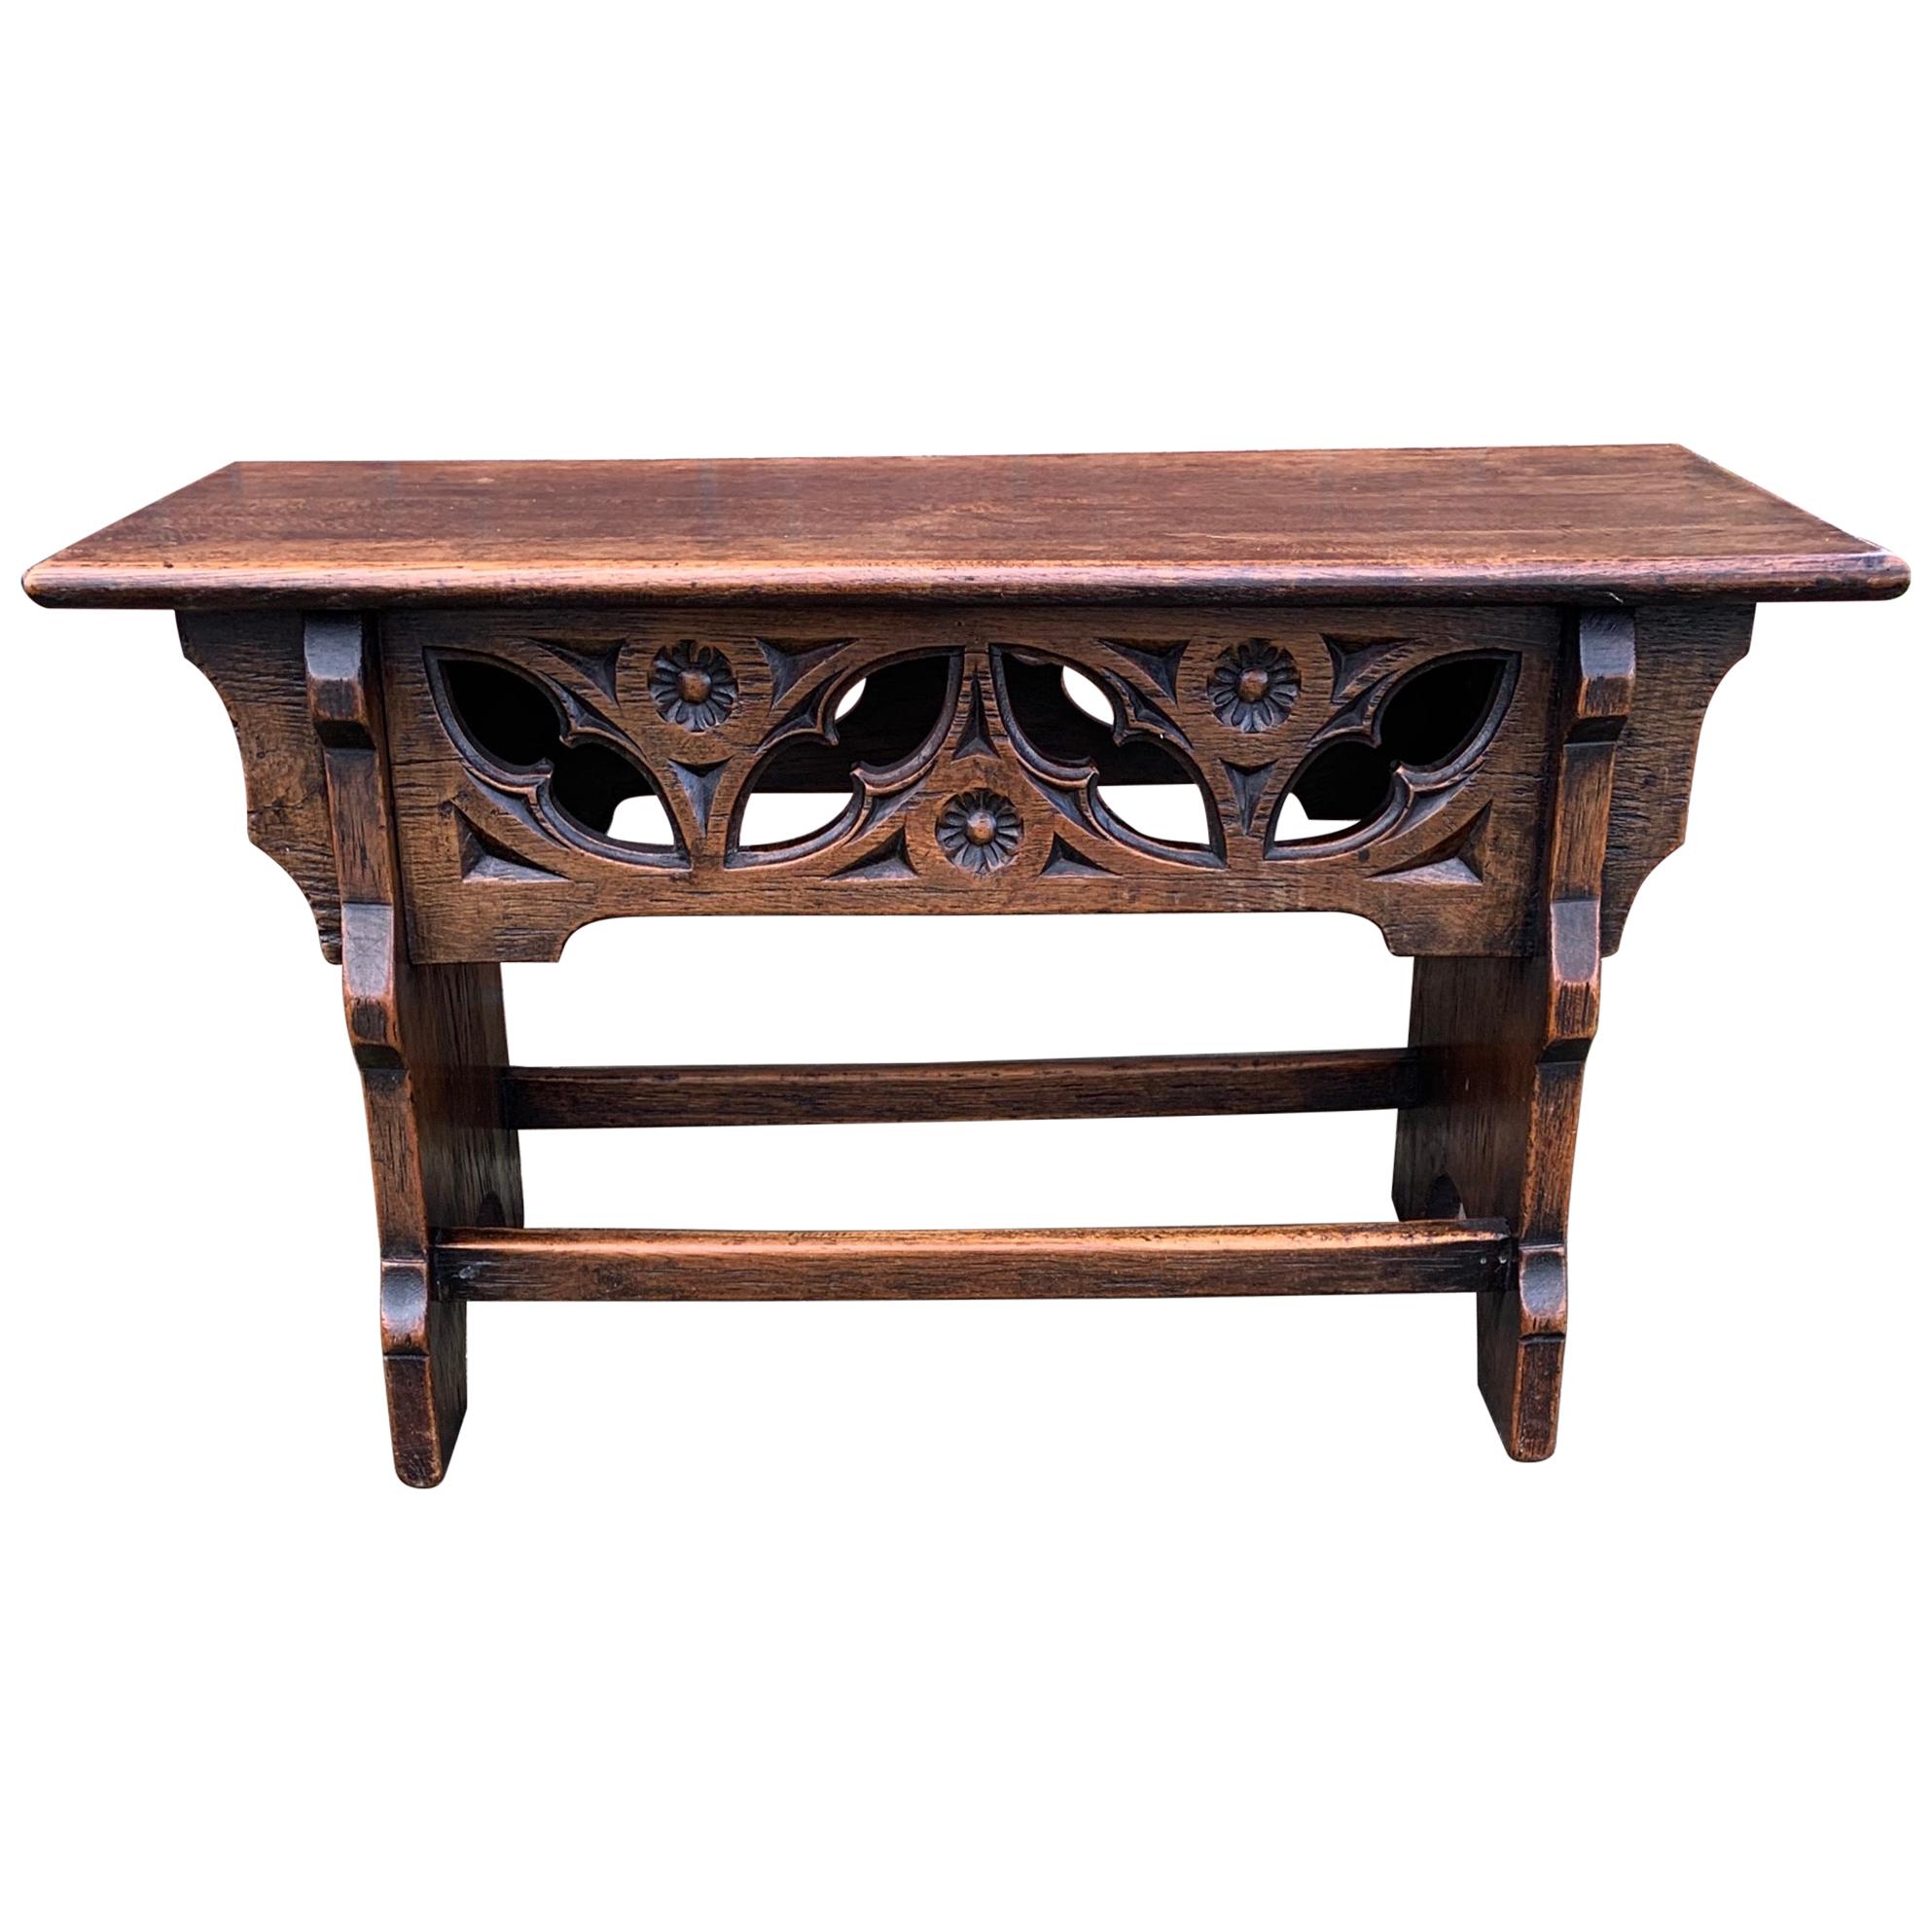 Antiker Hocker oder Tisch im Stil der Gotik um 1900 mit handgeschnitzten Elementen